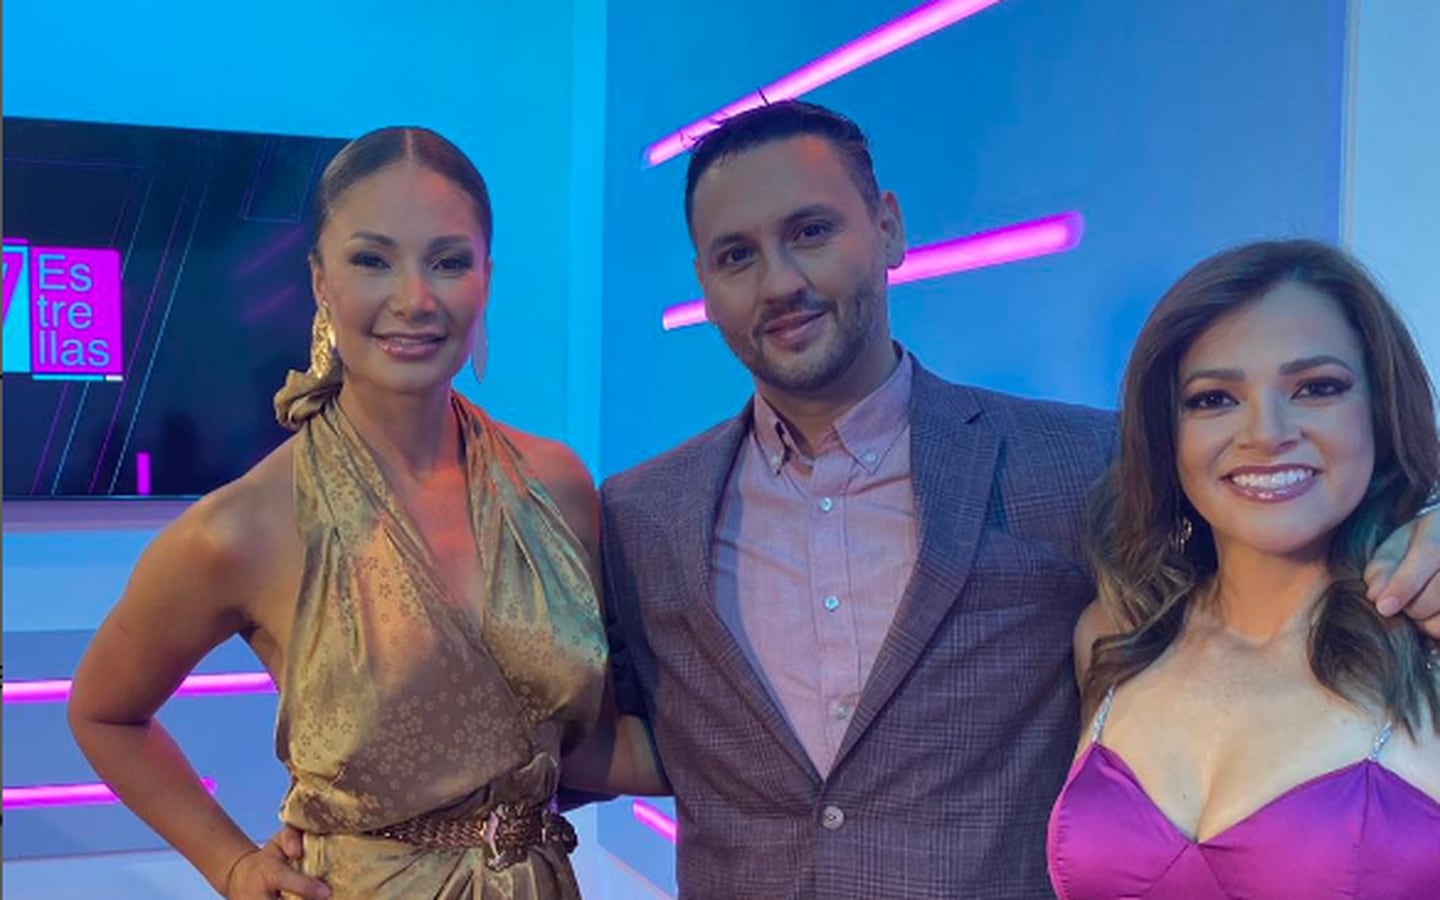 Programa 7 Estrellas, presentadores Marilin Gamboa, Wálter Campos y Gabriela Jiménez. Instagram